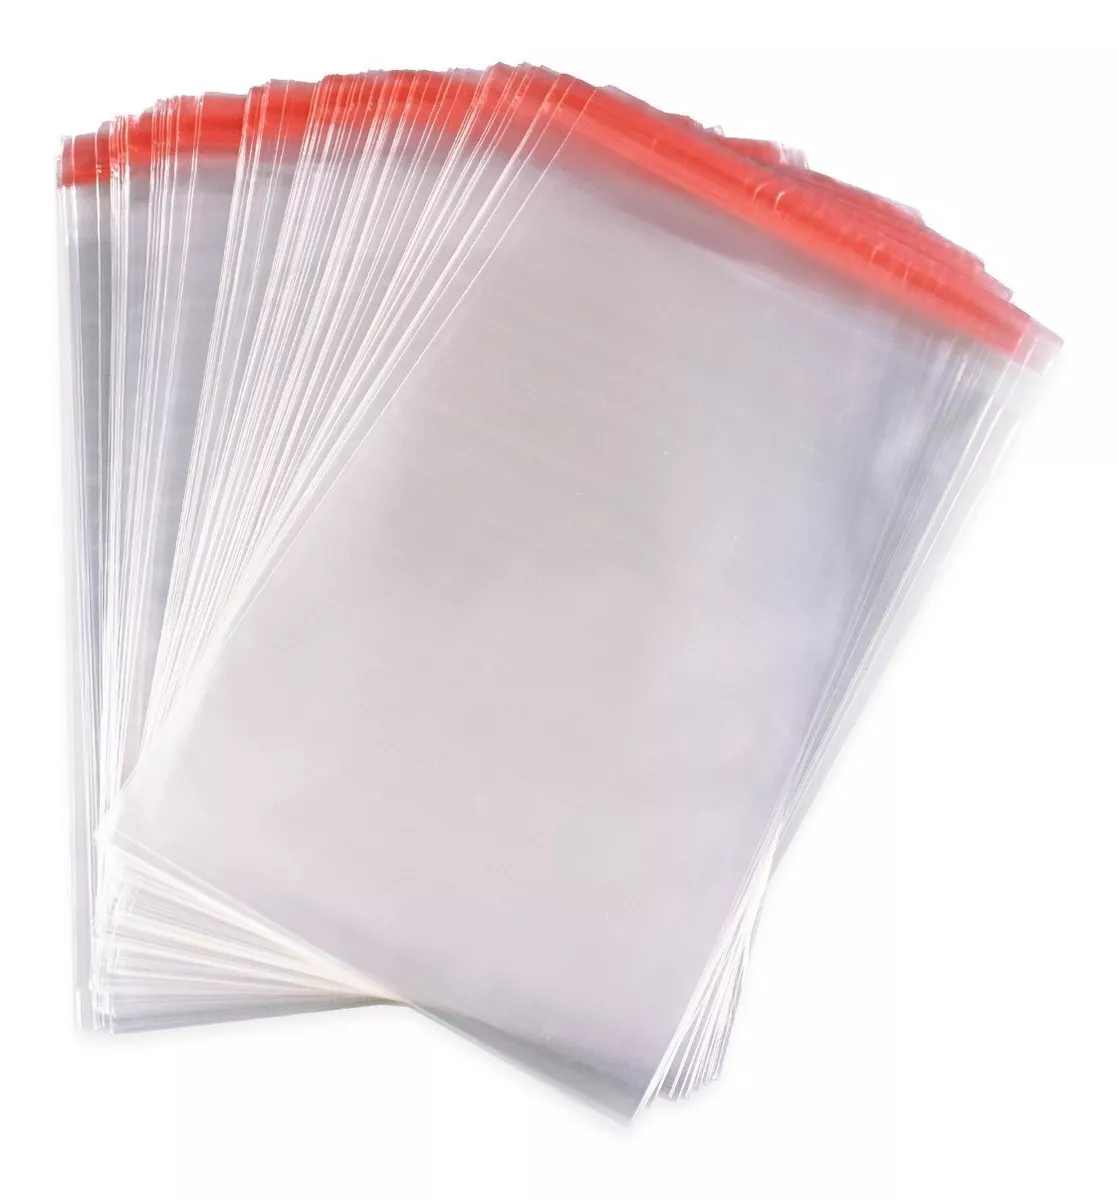 Terceira imagem para pesquisa de saco plastico transparente 10x15